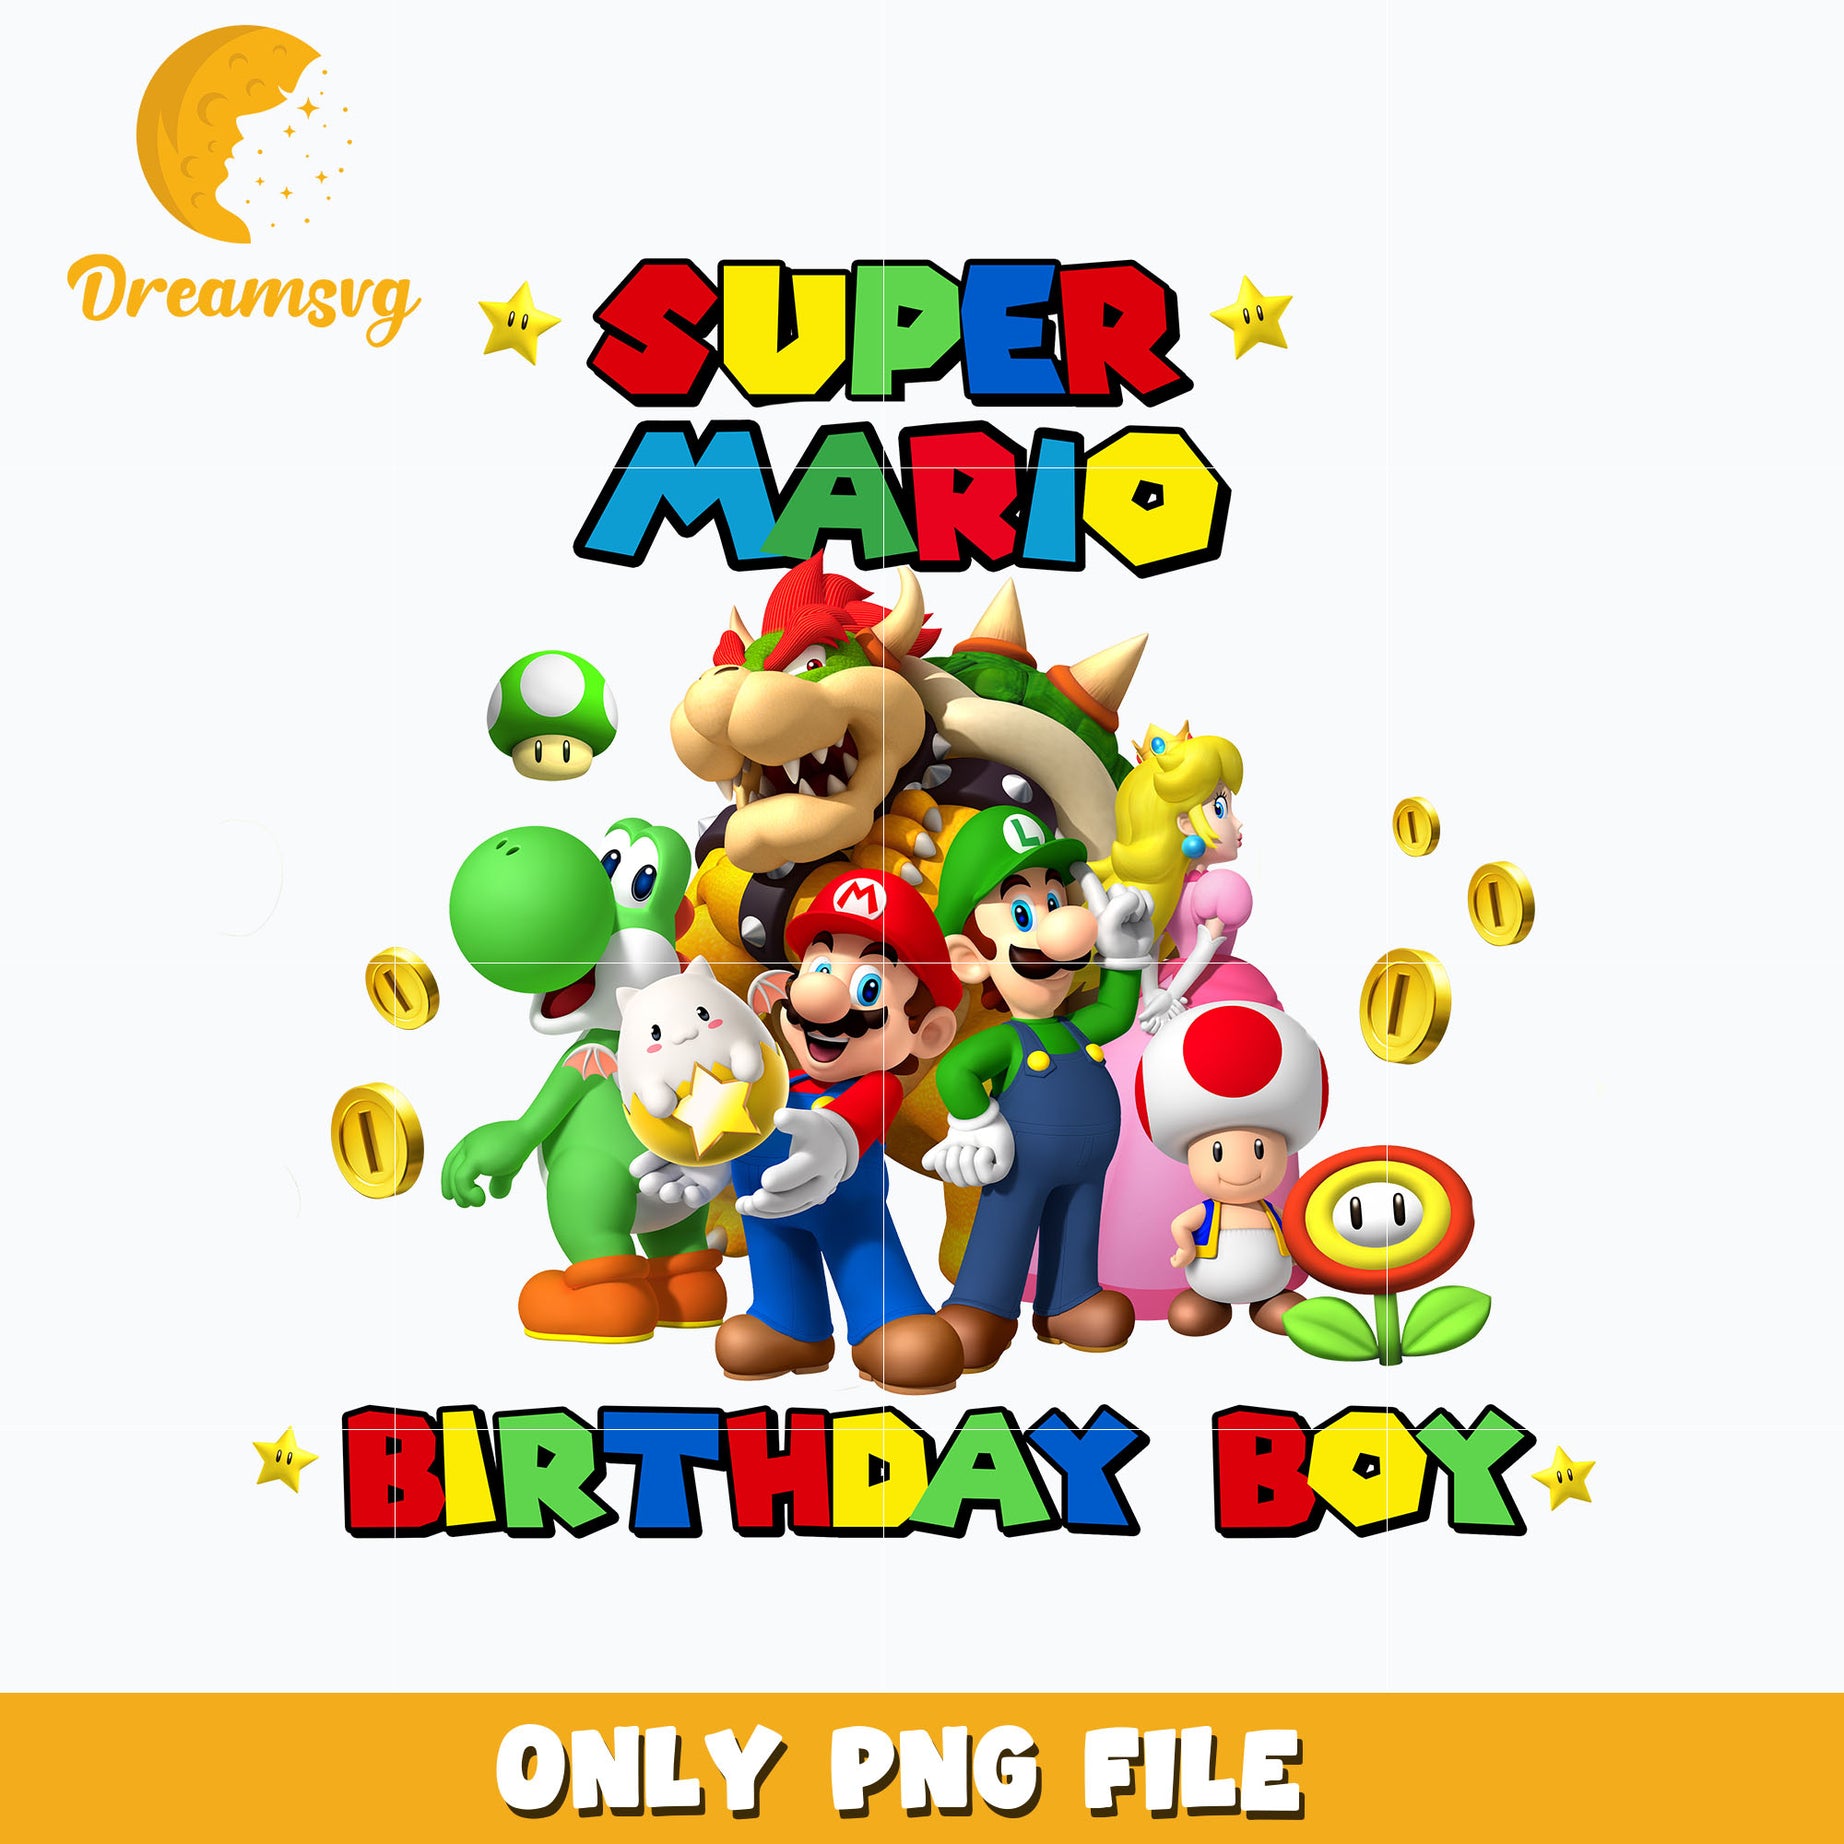 Super Mario birthday boy png